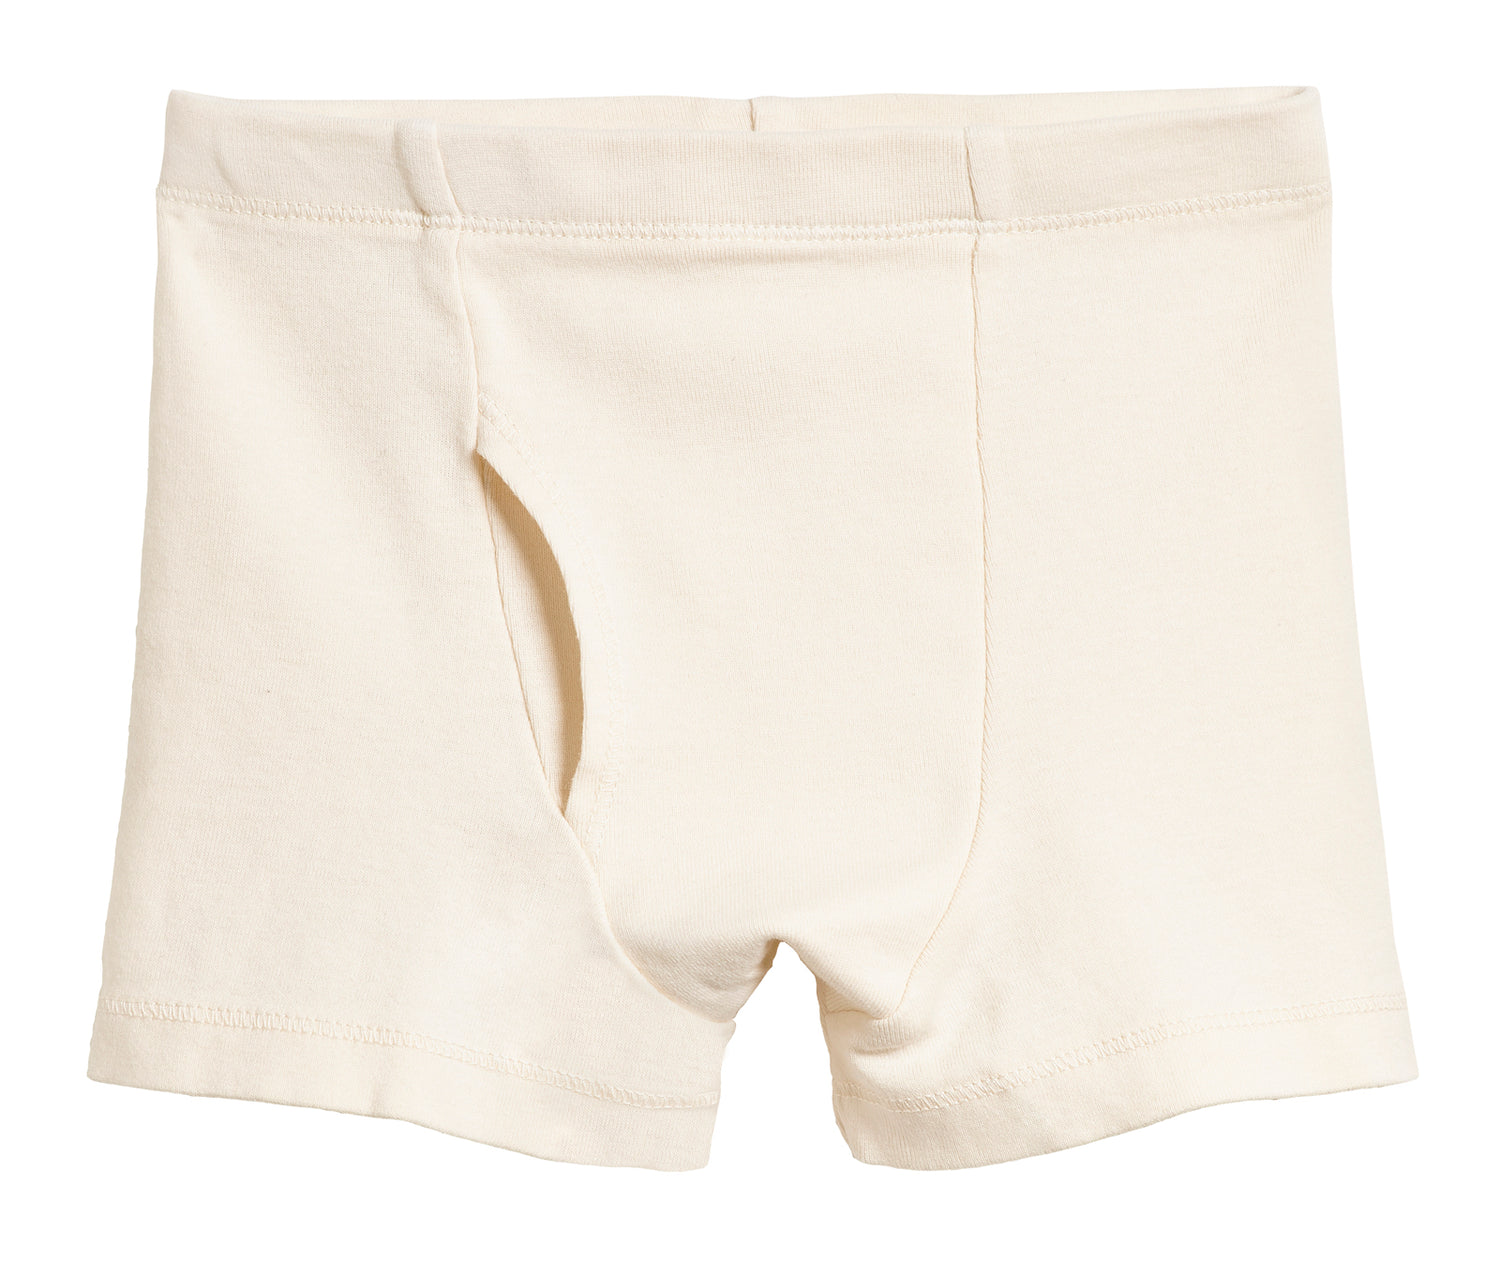 UNCO KIDS cotton briefs boy 2 to 16 years old underwear Boxer KIDS